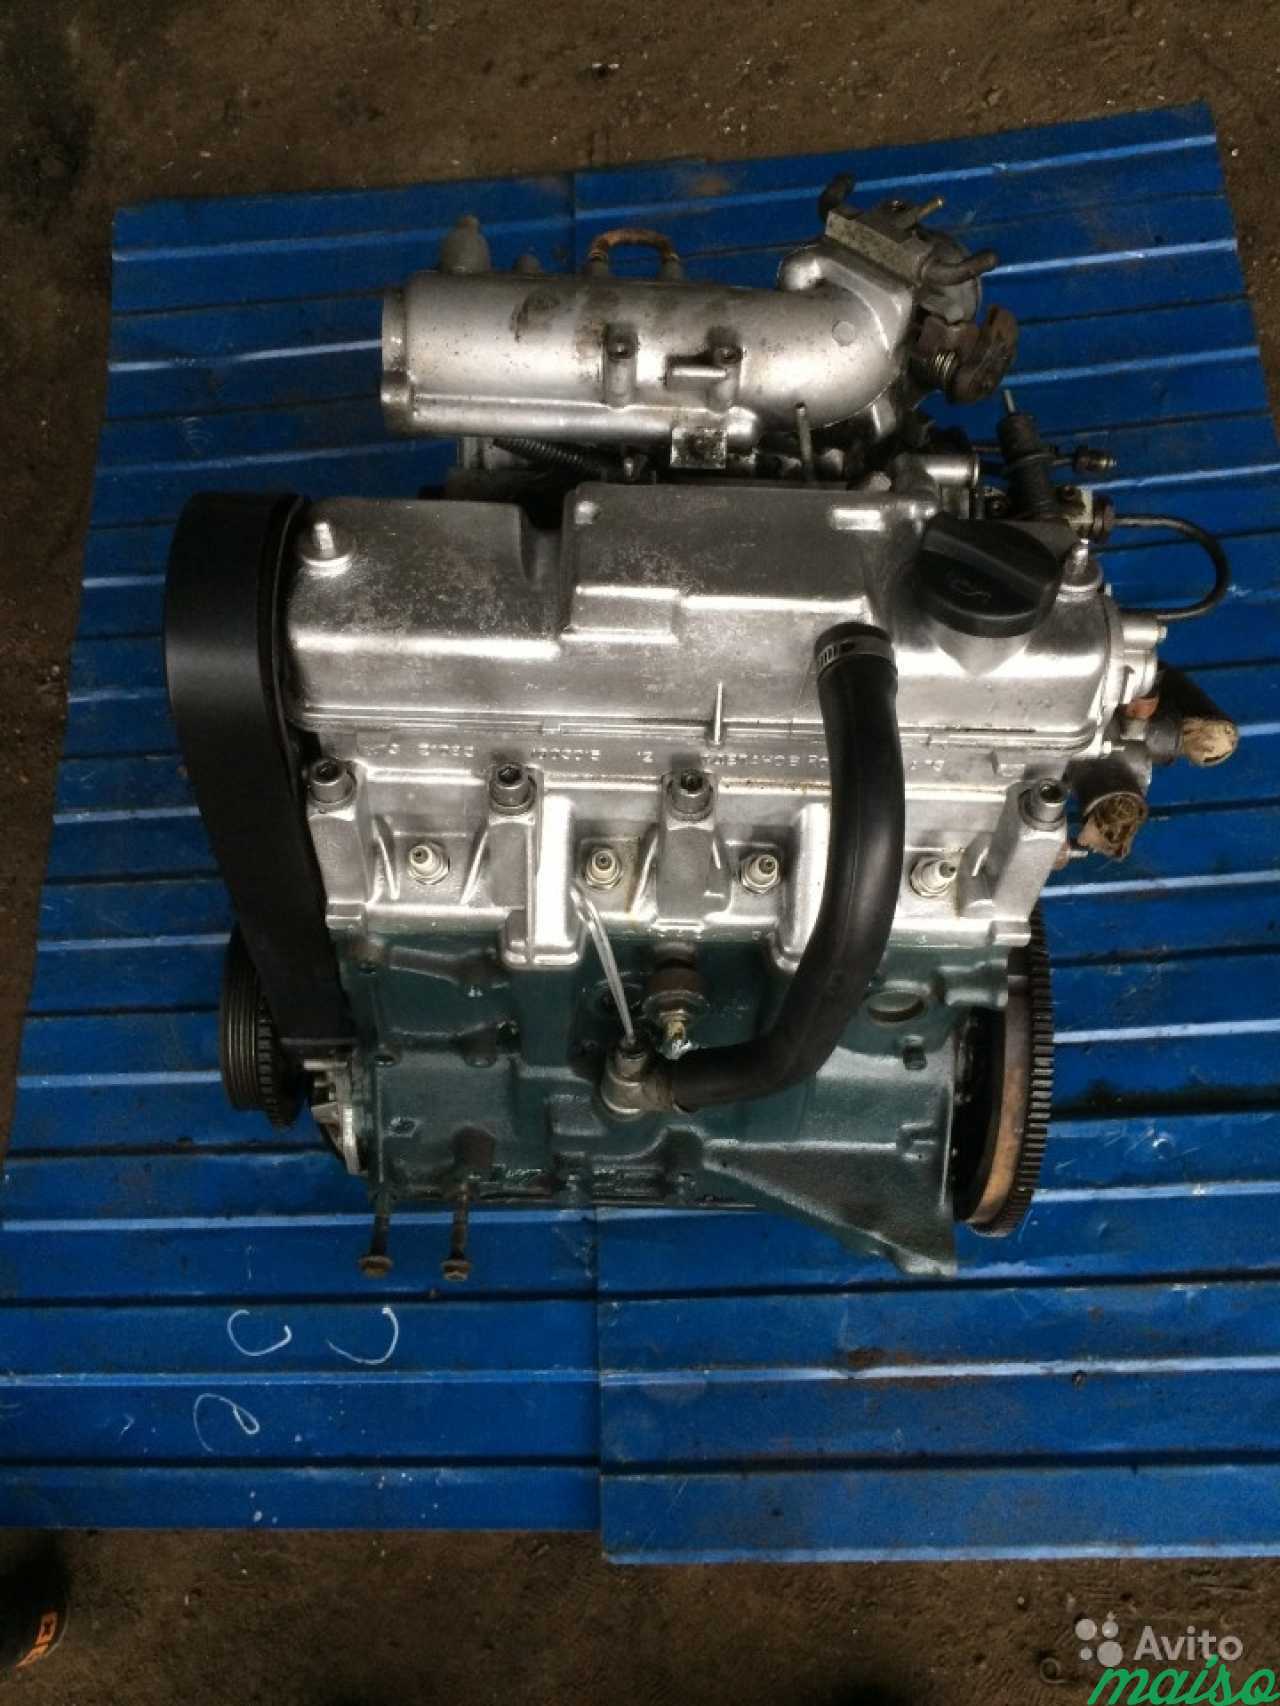 Купить мотор 2114. Двигатель ВАЗ 2110. Мотор ВАЗ 2114. Новый двигатель ВАЗ 2114. Двигатель в сборе ВАЗ 2114.